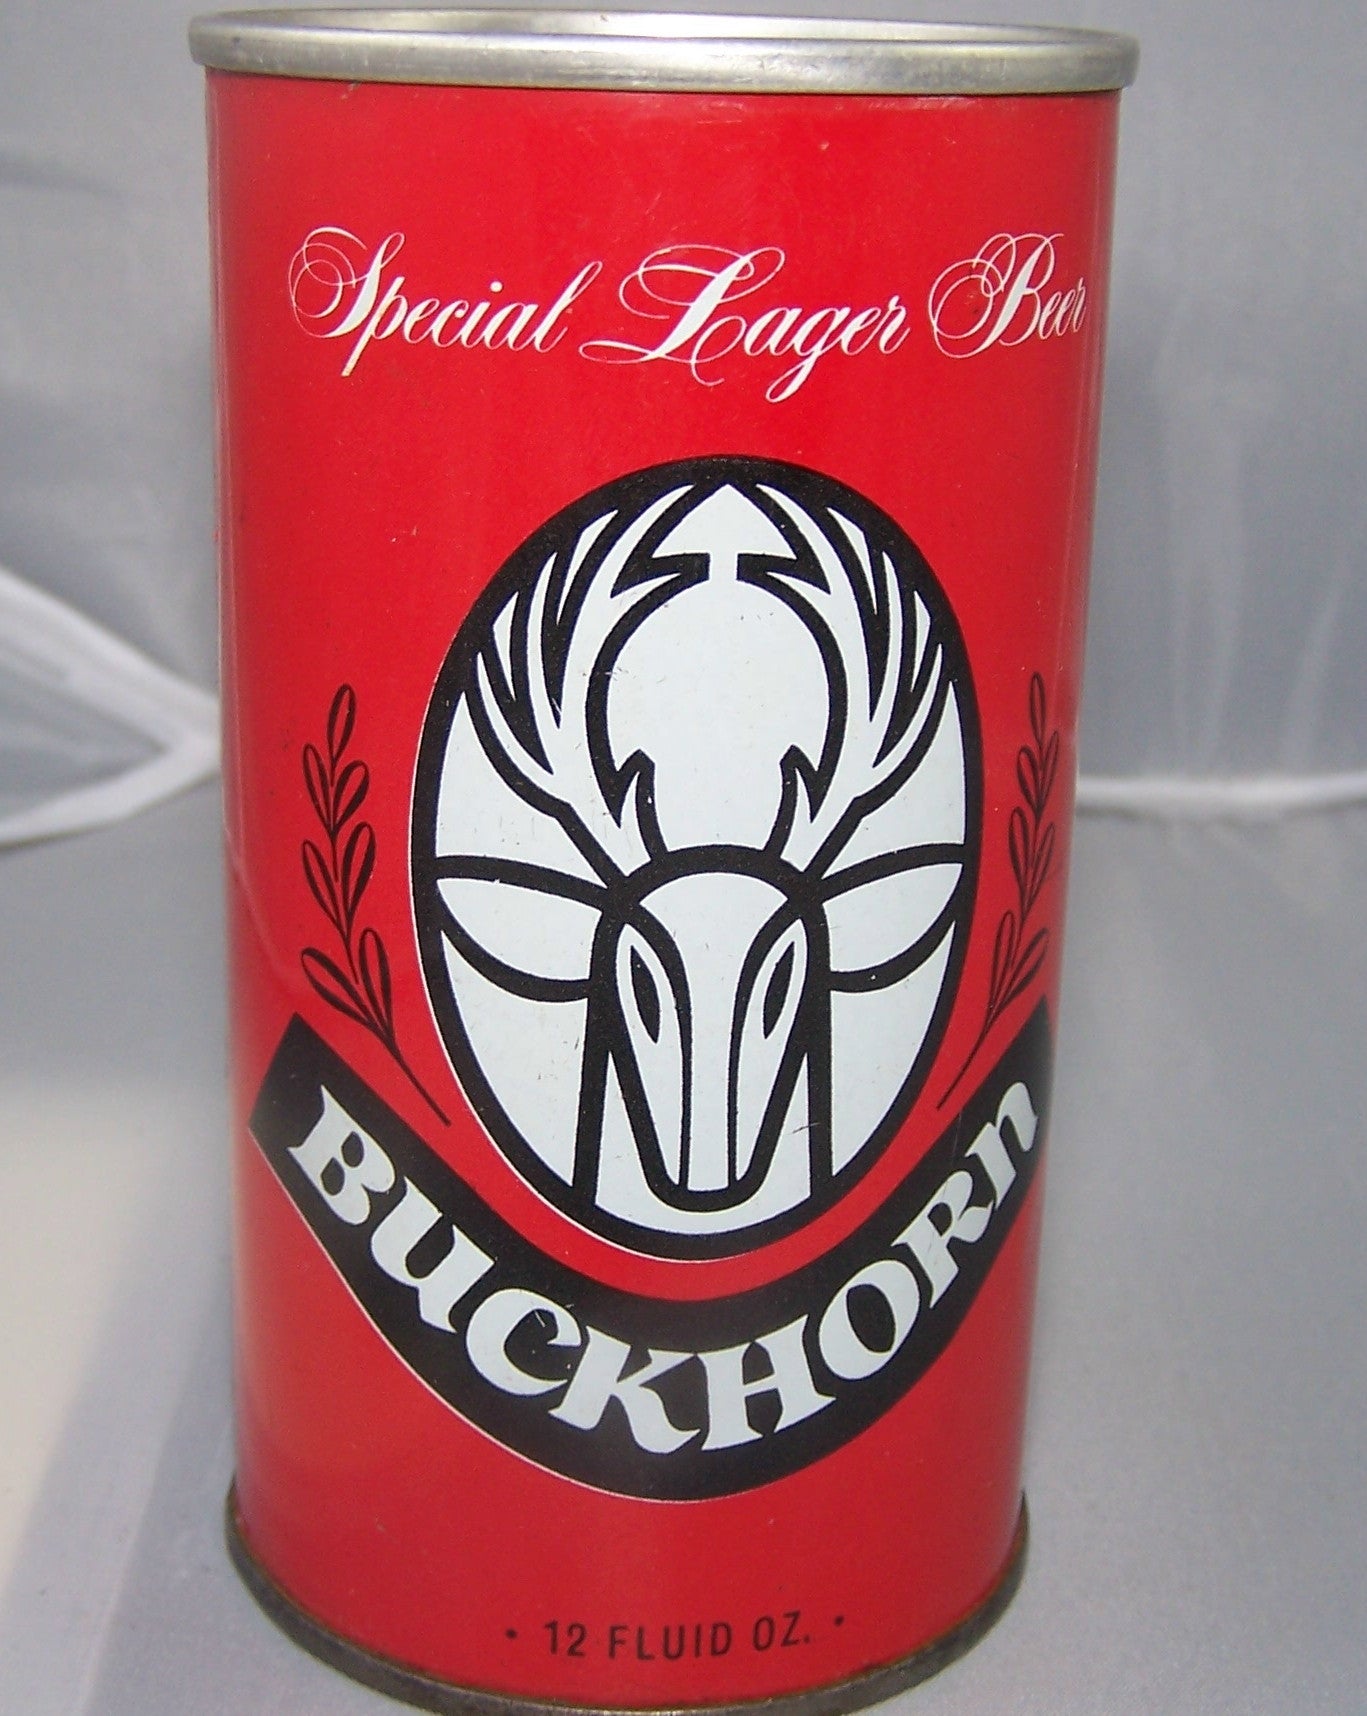 Buckhorn Lager Beer, USBC II 47-21, Grade 1/1+ Sold on 08/12/16